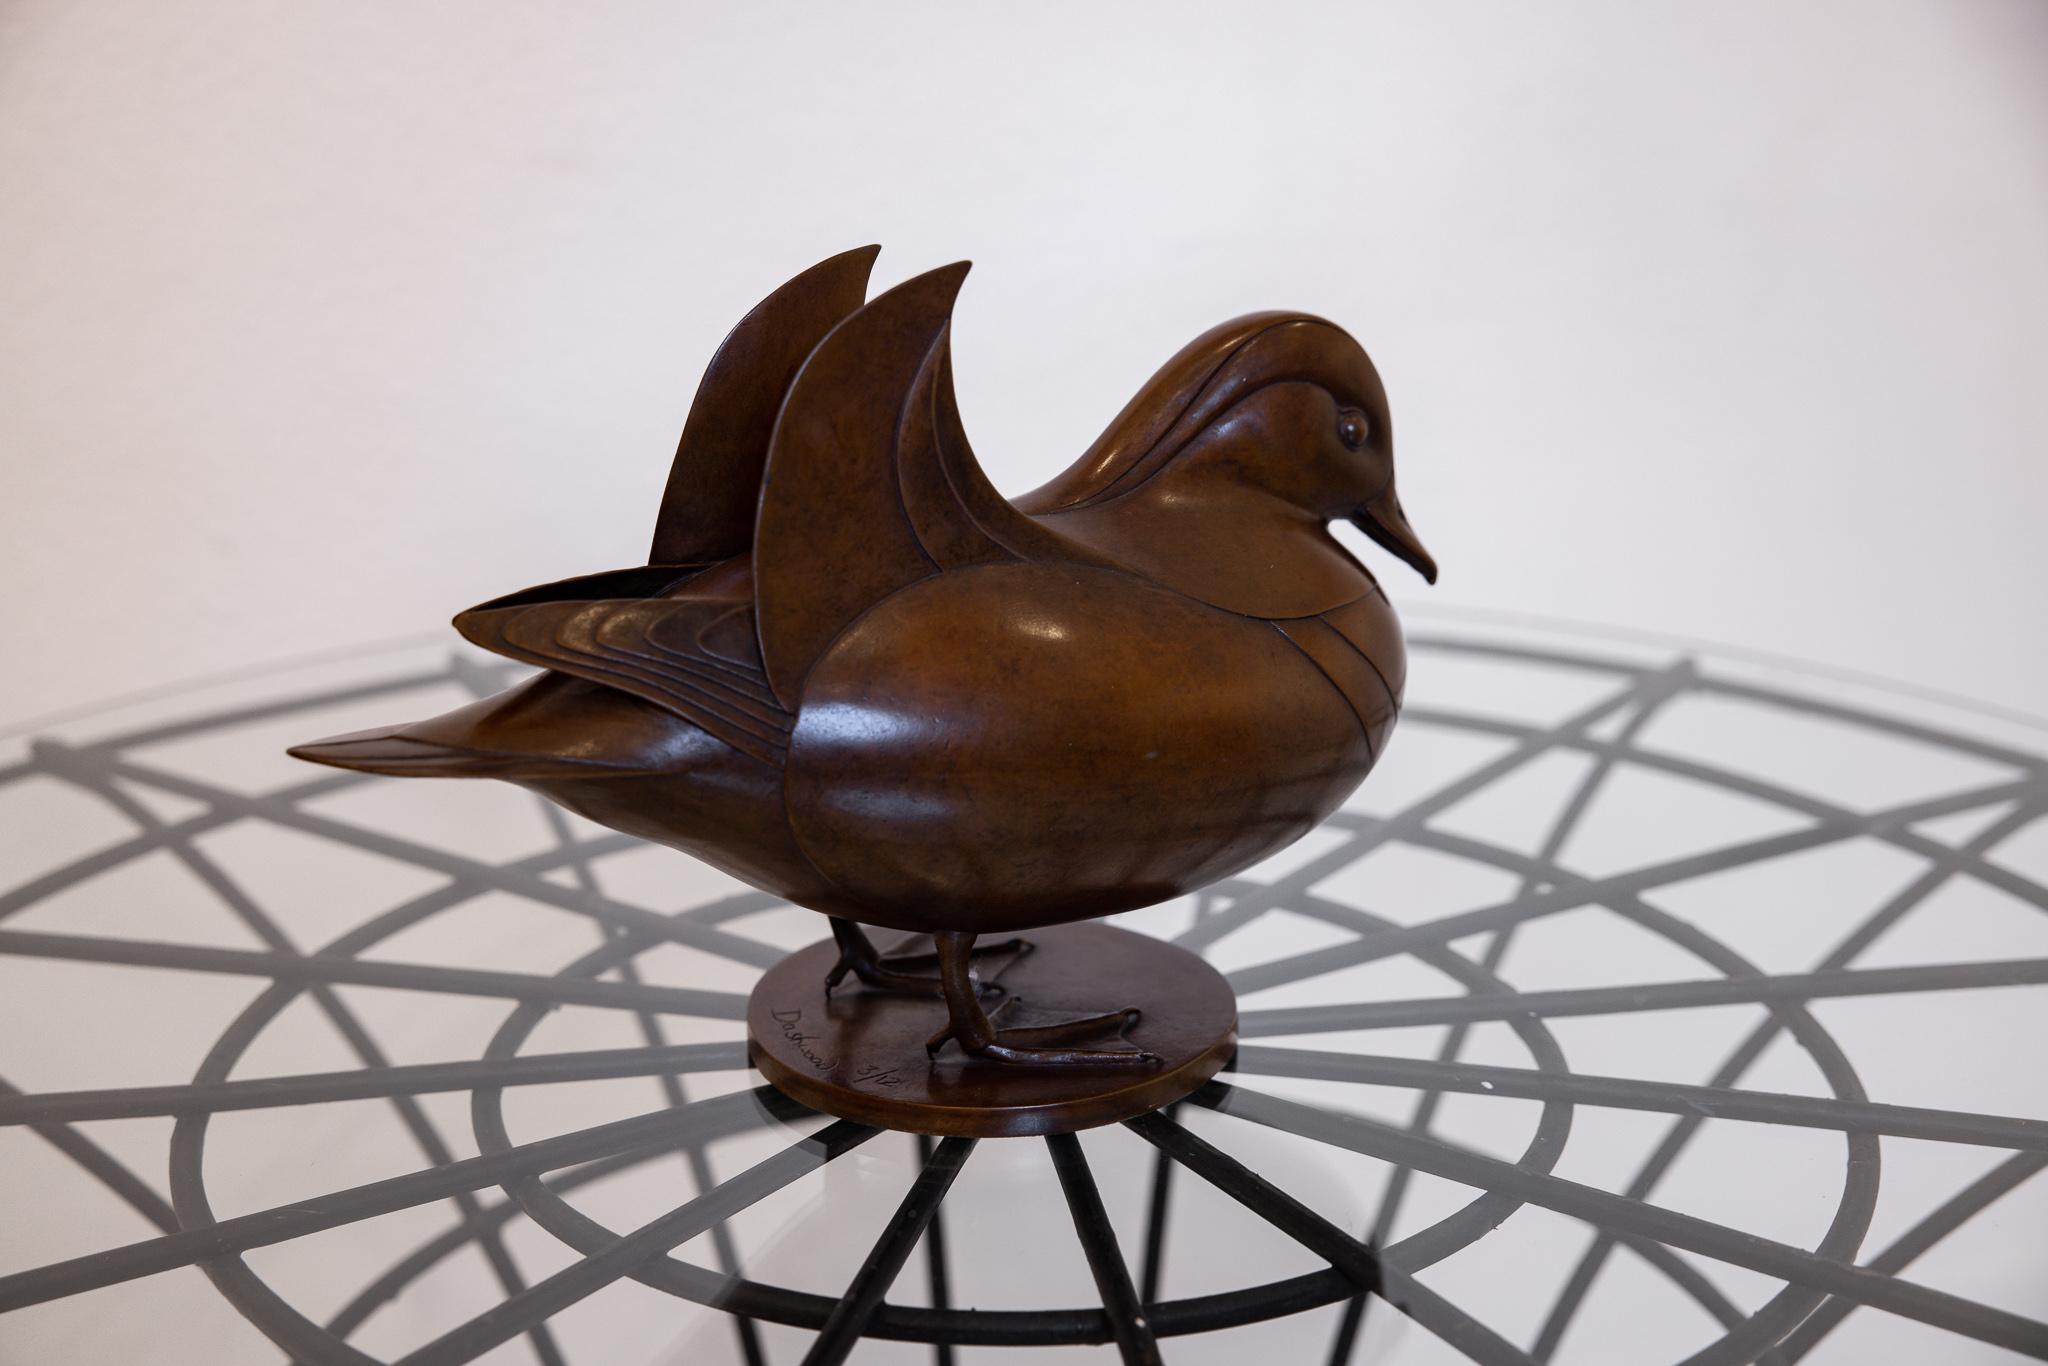 Dies ist eine ausgezeichnete stilisierte Bronzeskulptur einer Mandarinente von Geoffrey Dashwood. Diese Skulptur, die für ihre Einfachheit, ihre glatten Oberflächen und ihre geschwungenen Formen bekannt ist, ist eine hervorragende Darstellung seines